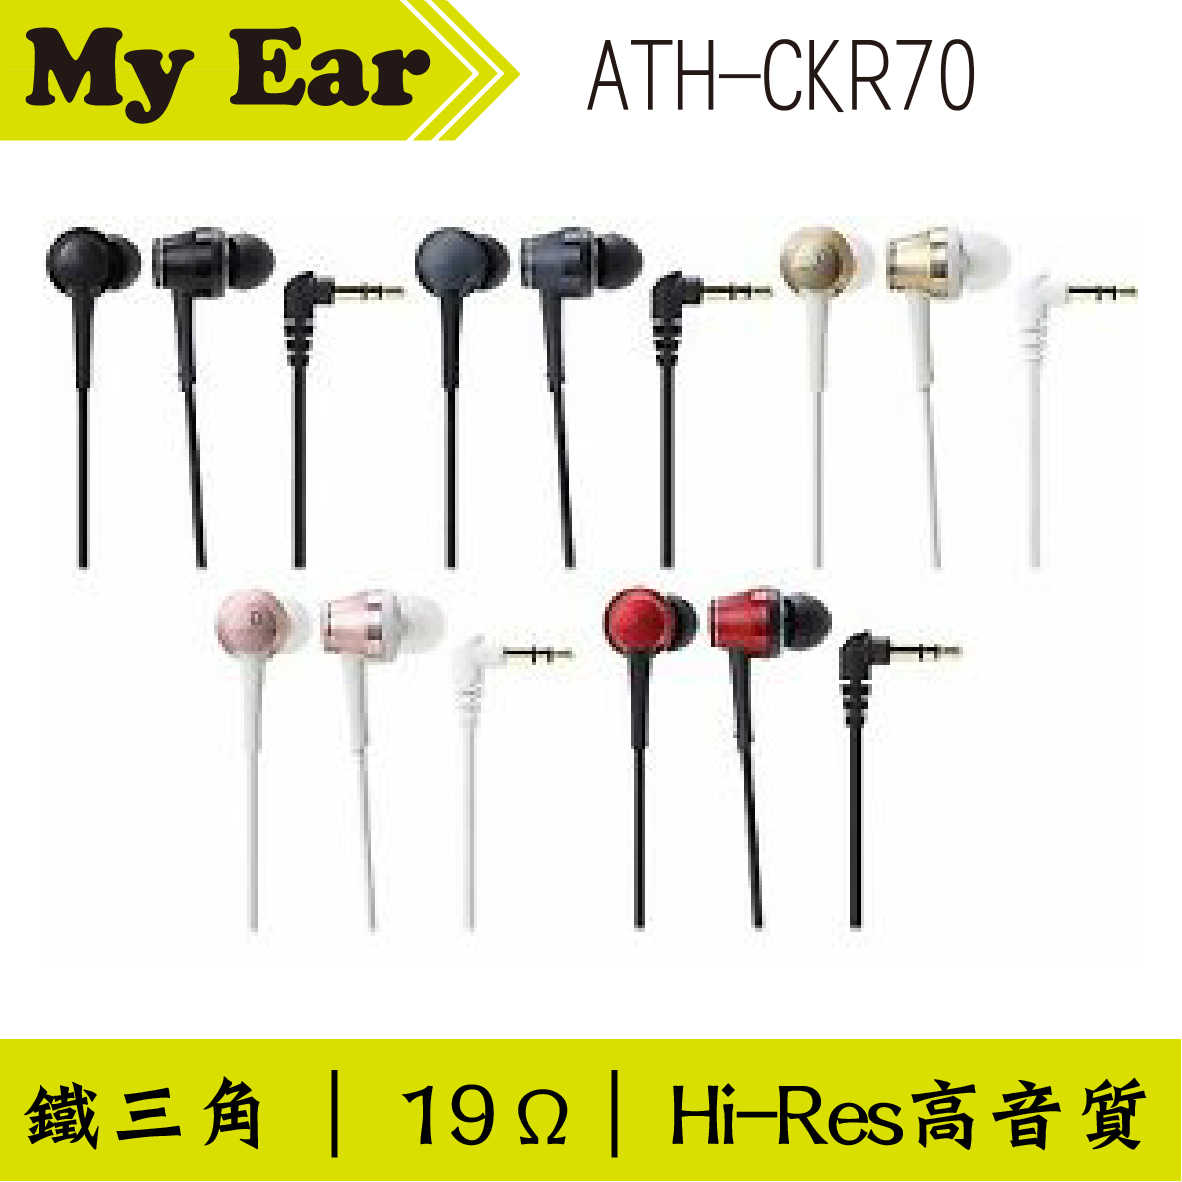 鐵三角 ATH-CKR70 耳道式耳機 白金色｜My Ear 耳機專門店